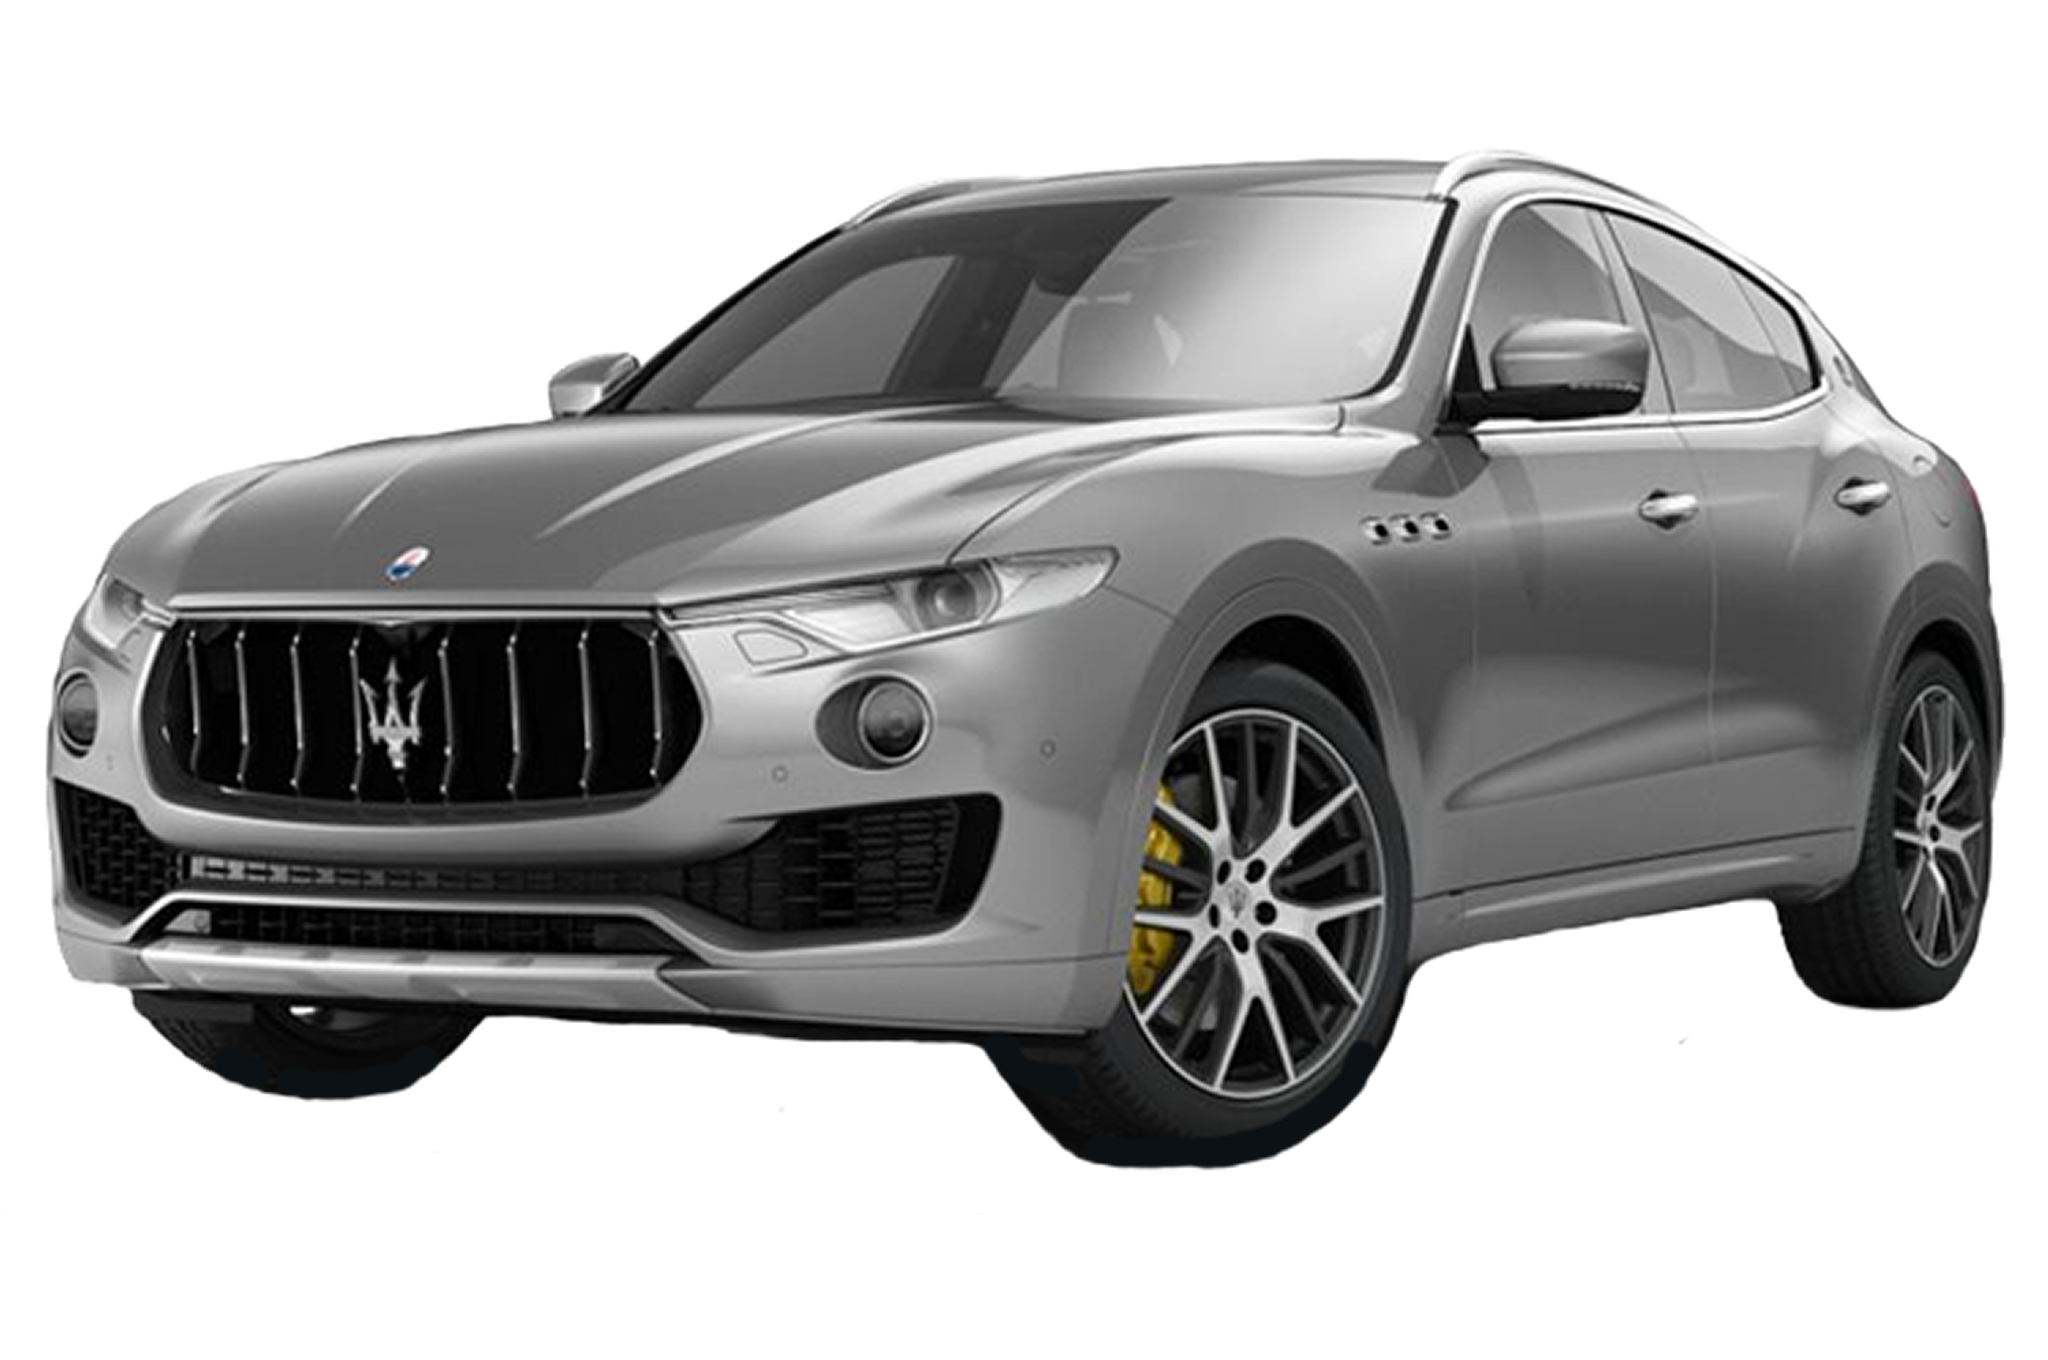 Granturismo Maserati Rim 2018 Vehicle Levante Luxury PNG Image